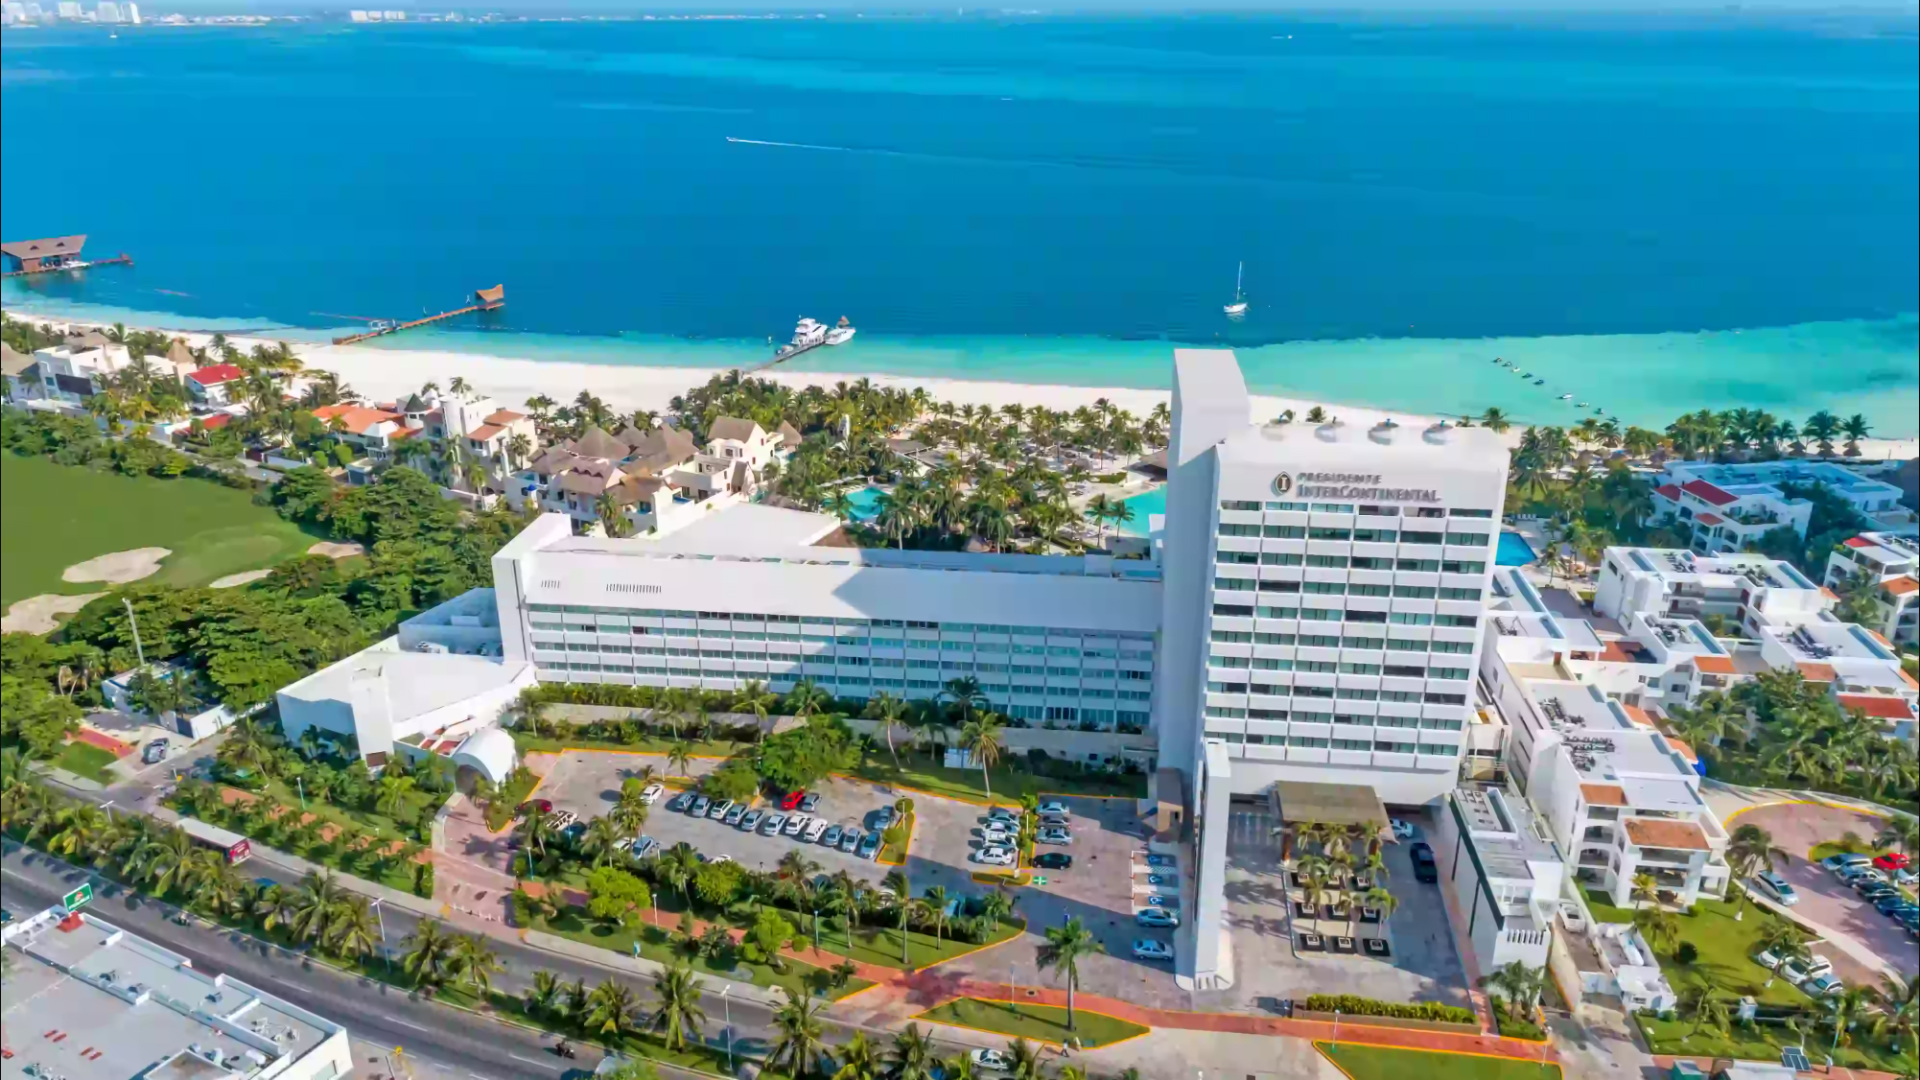 presidente hotel cancun